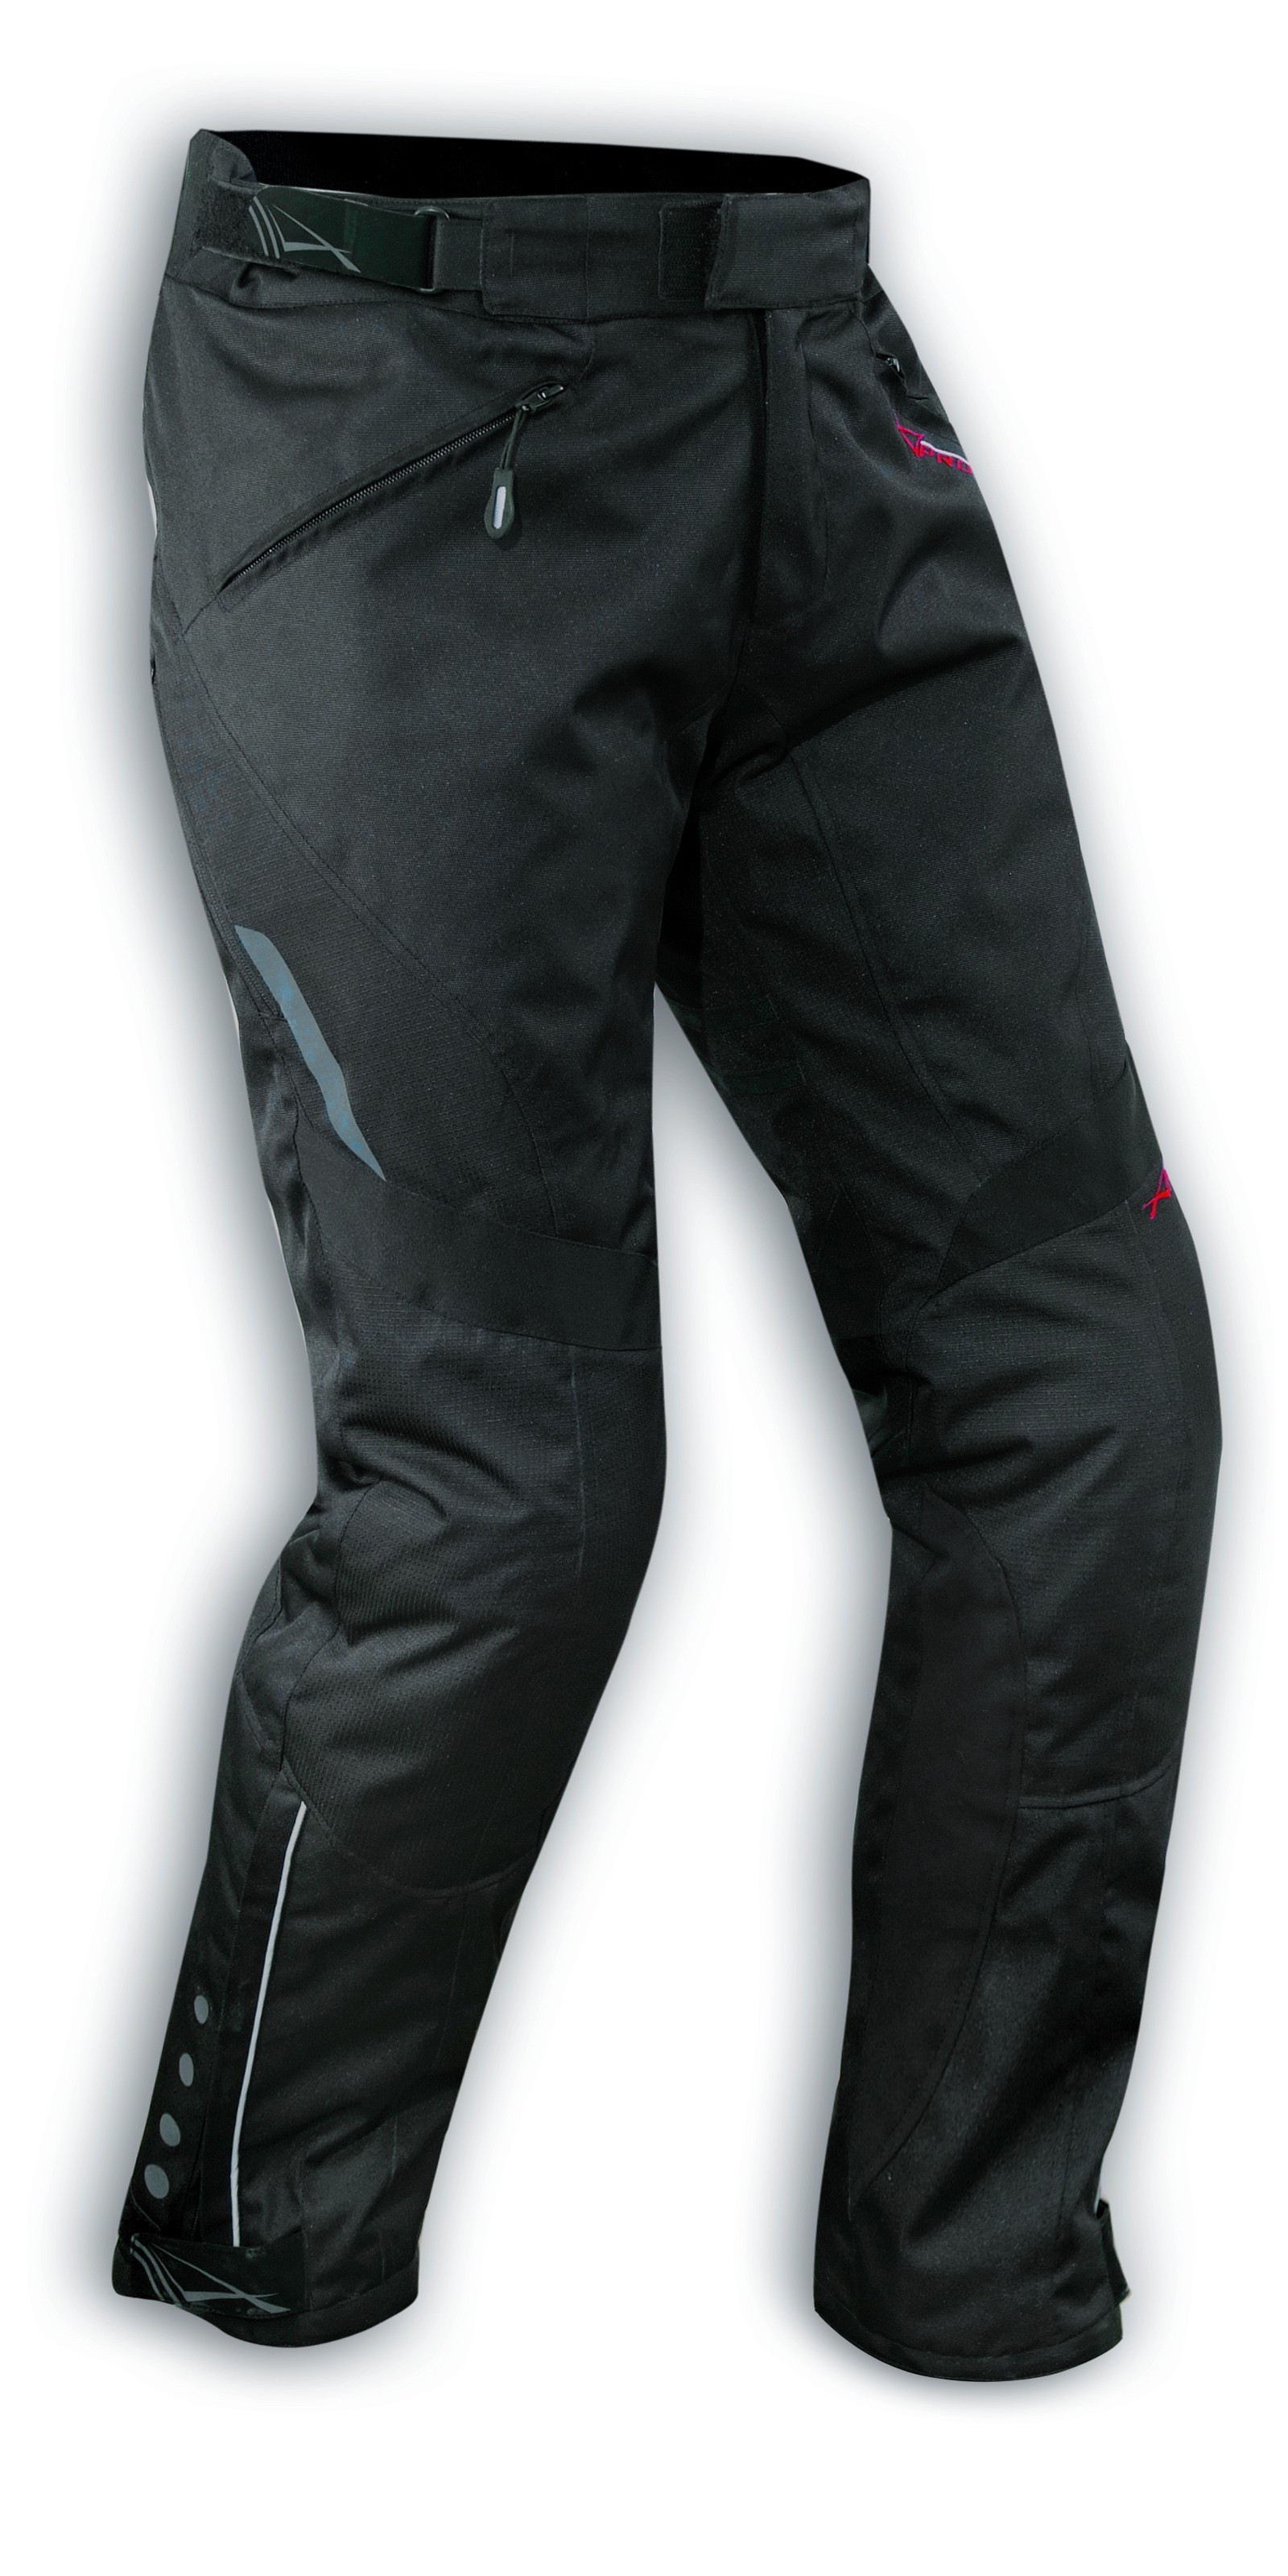 Pantalon Moto Long 8 cm Tissu Hivernal Protections Genoux Thermique Impermeable